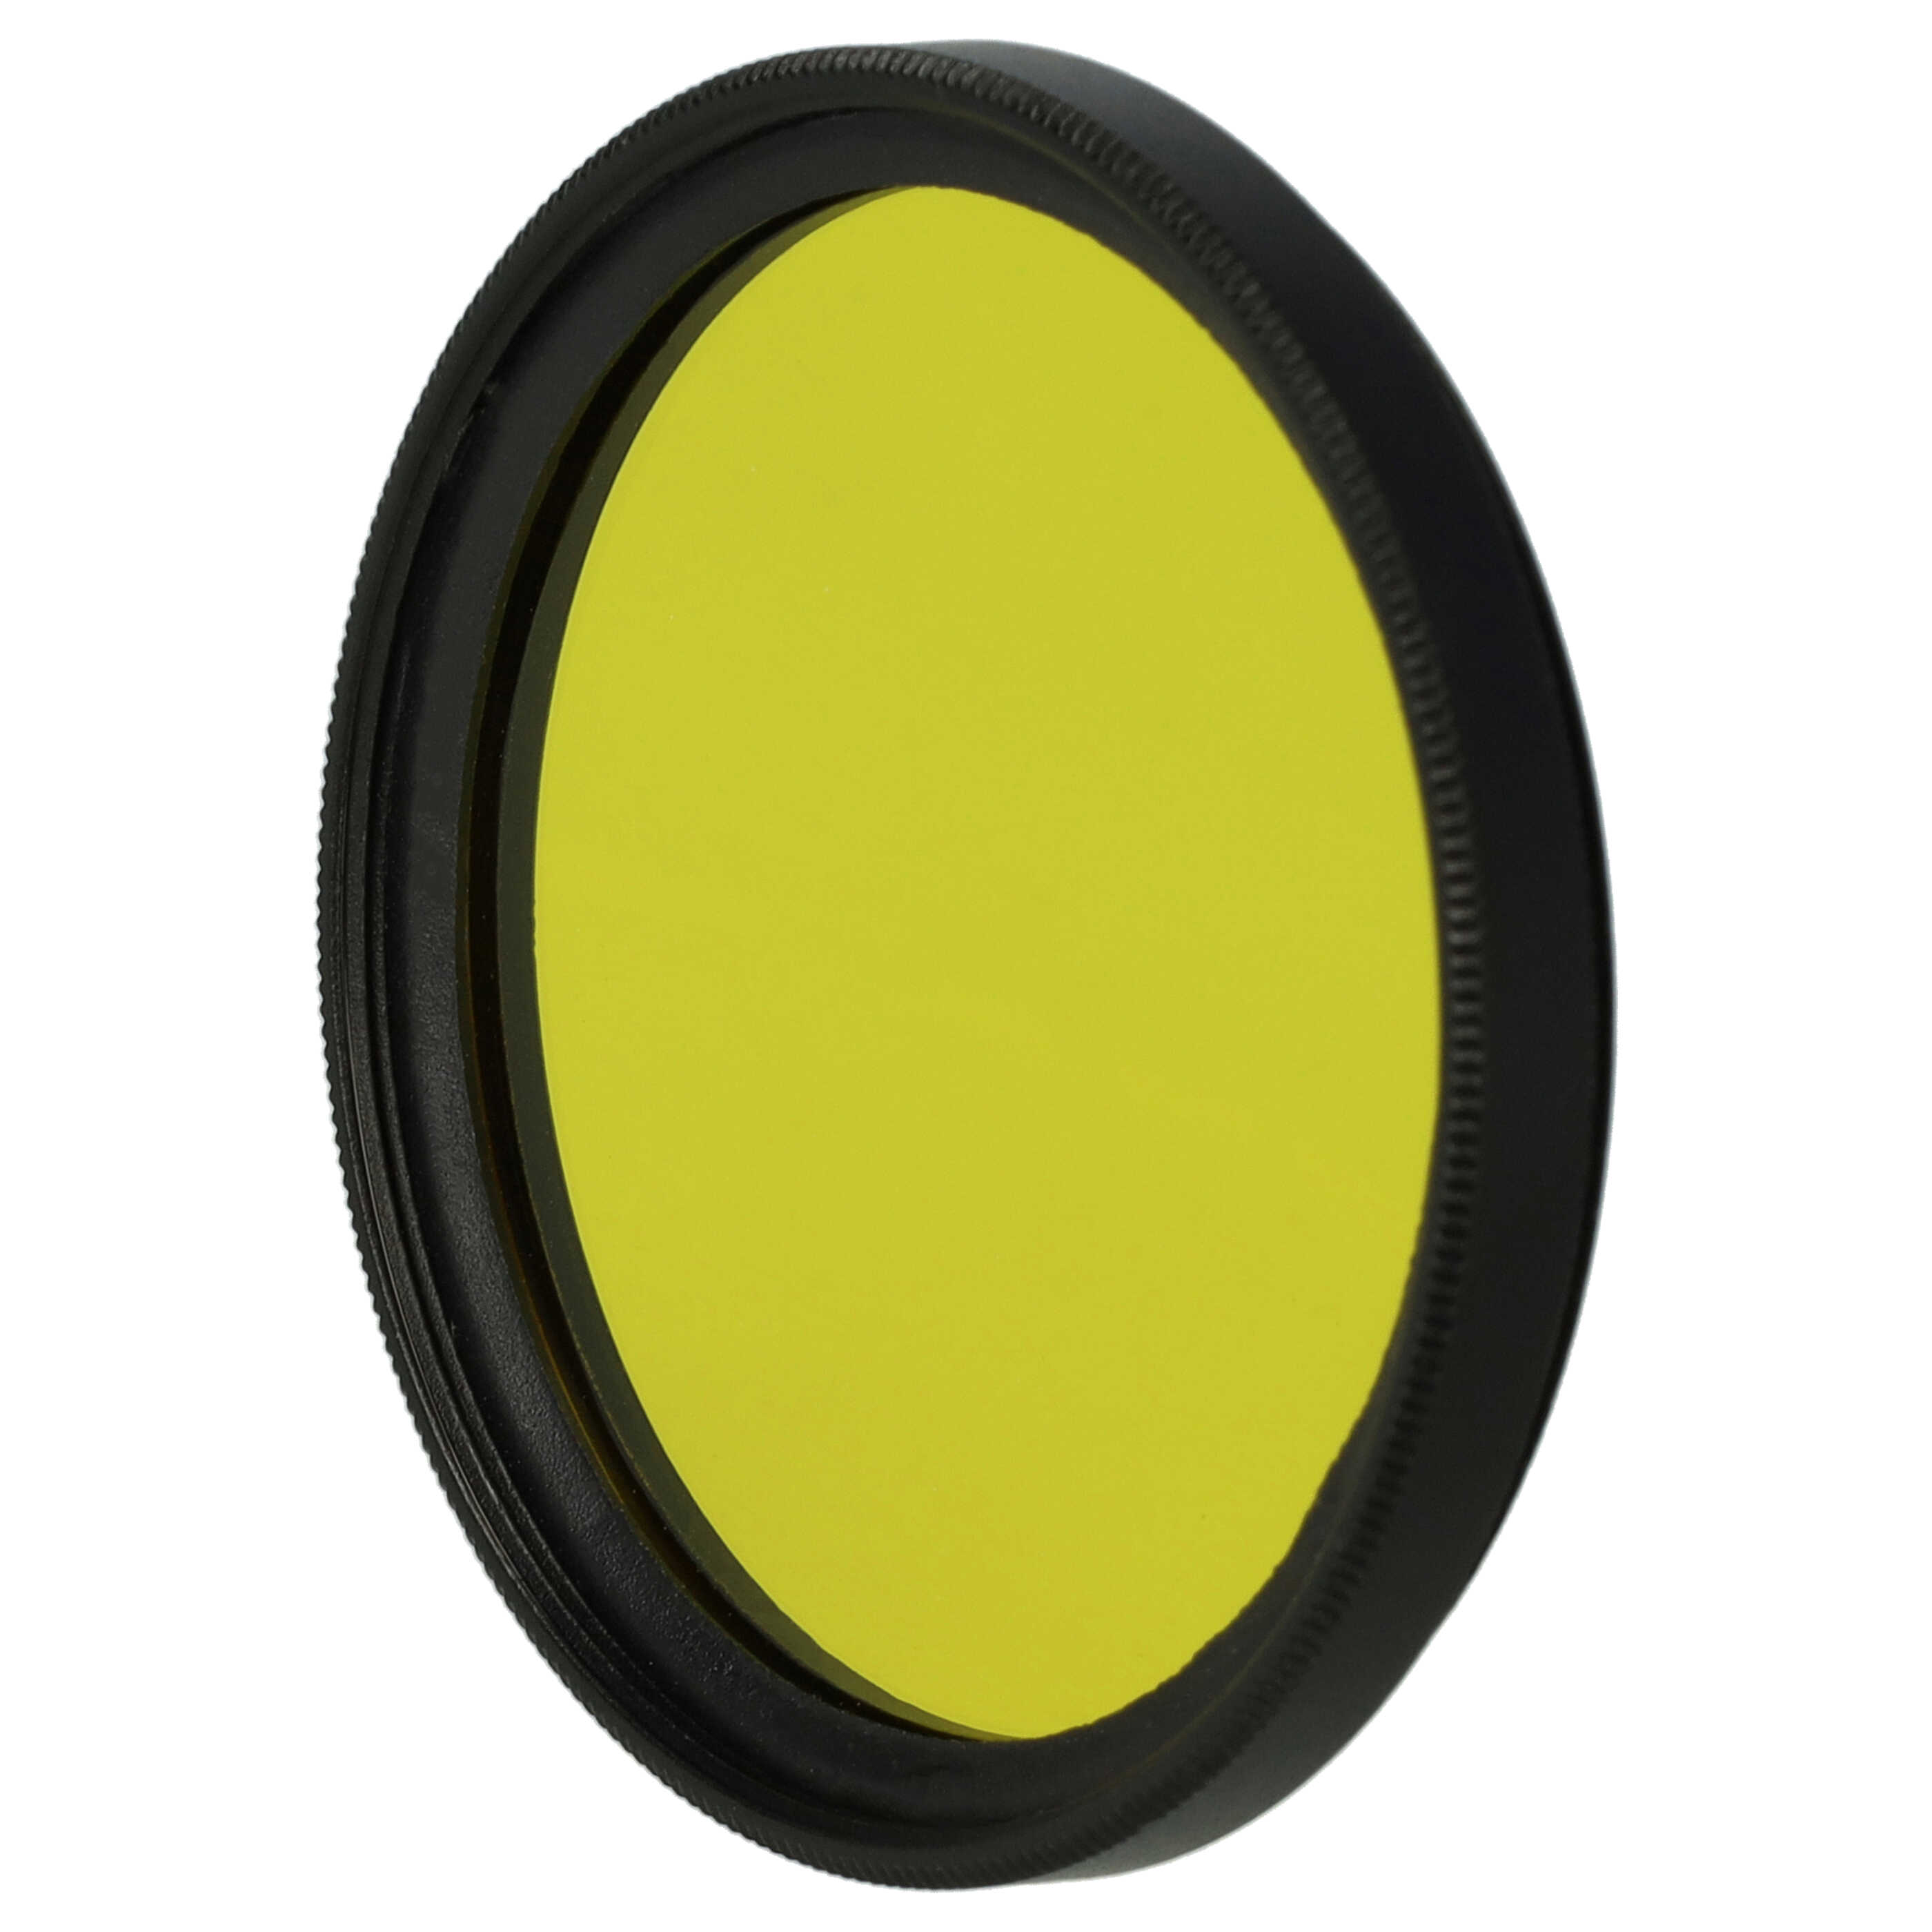 Filtre de couleur jaune pour objectifs d'appareils photo de 46 mm - Filtre jaune